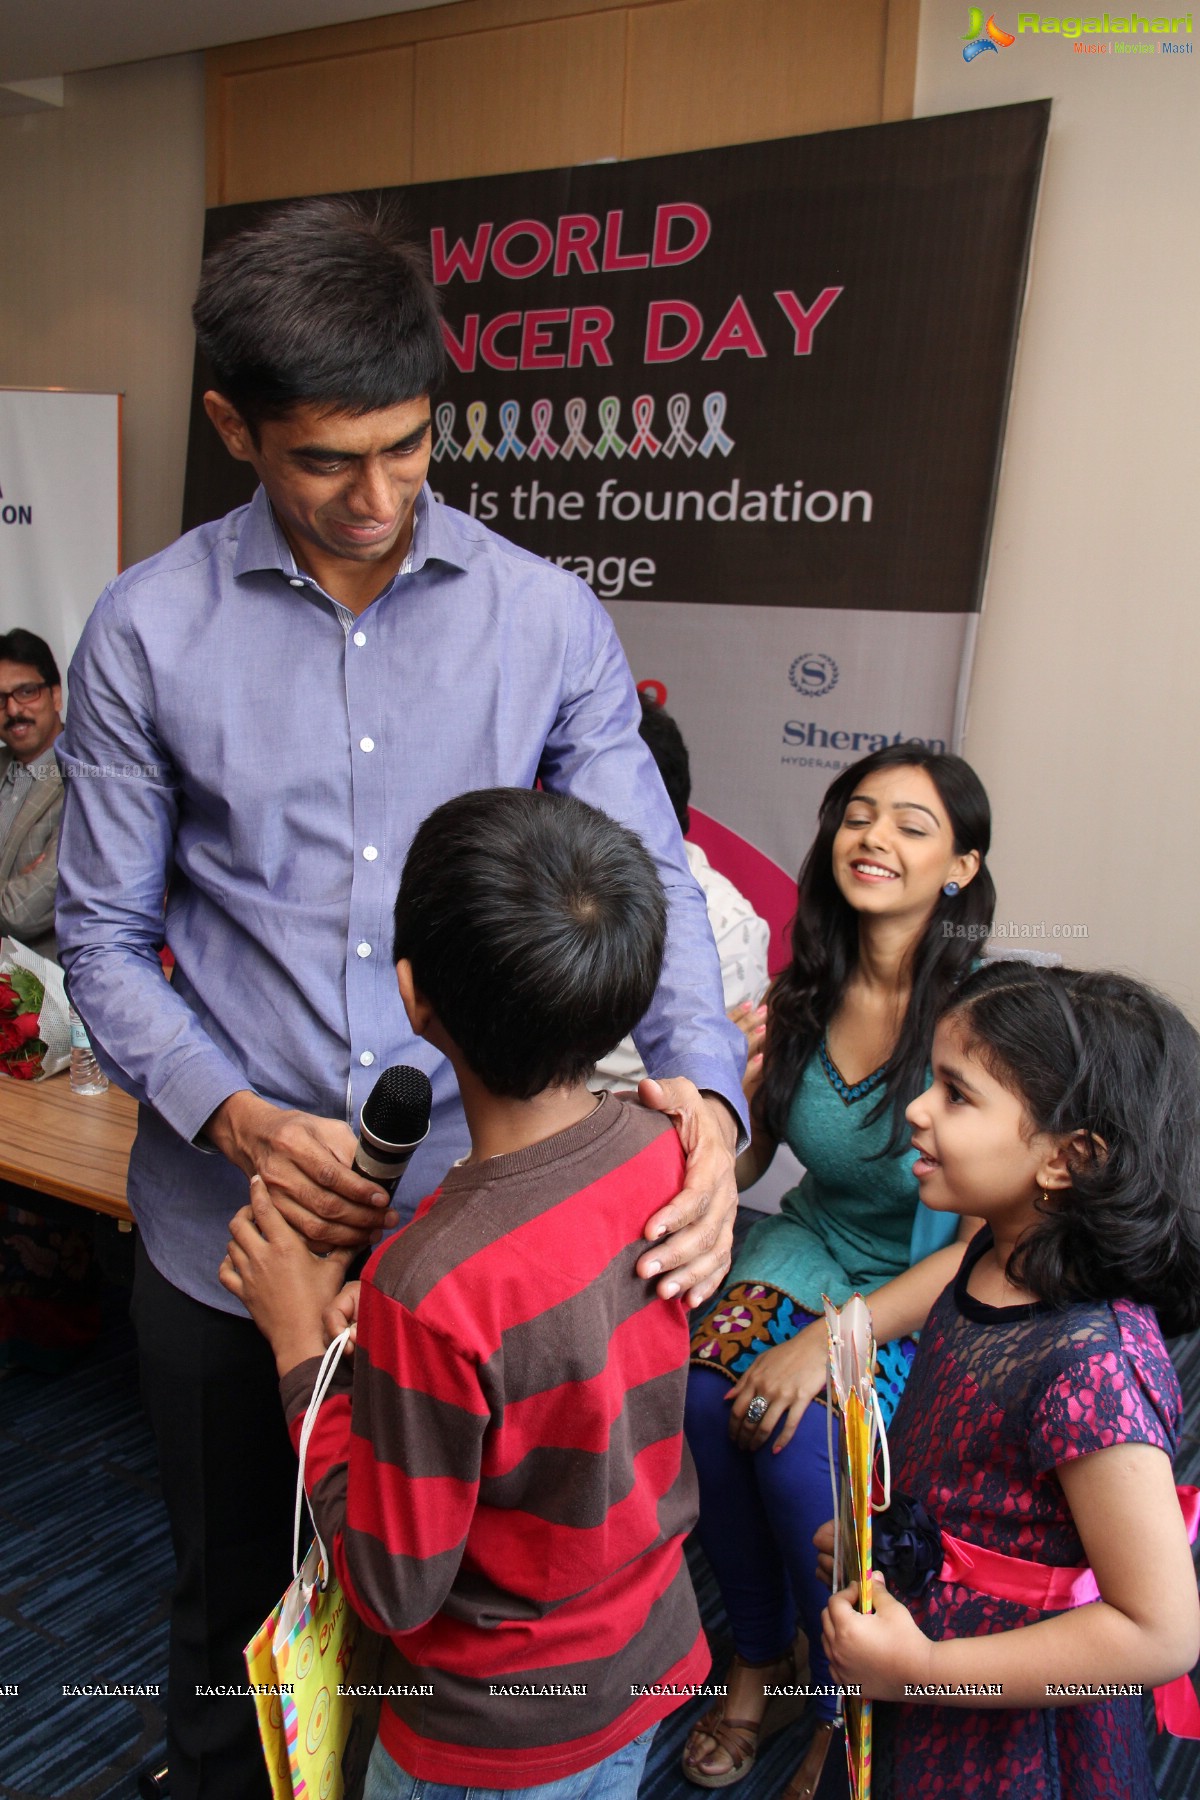 Padesaave Team at Cancer Awareness Drive at Sheraton Hyderabad Hotel by Vimala Foundation